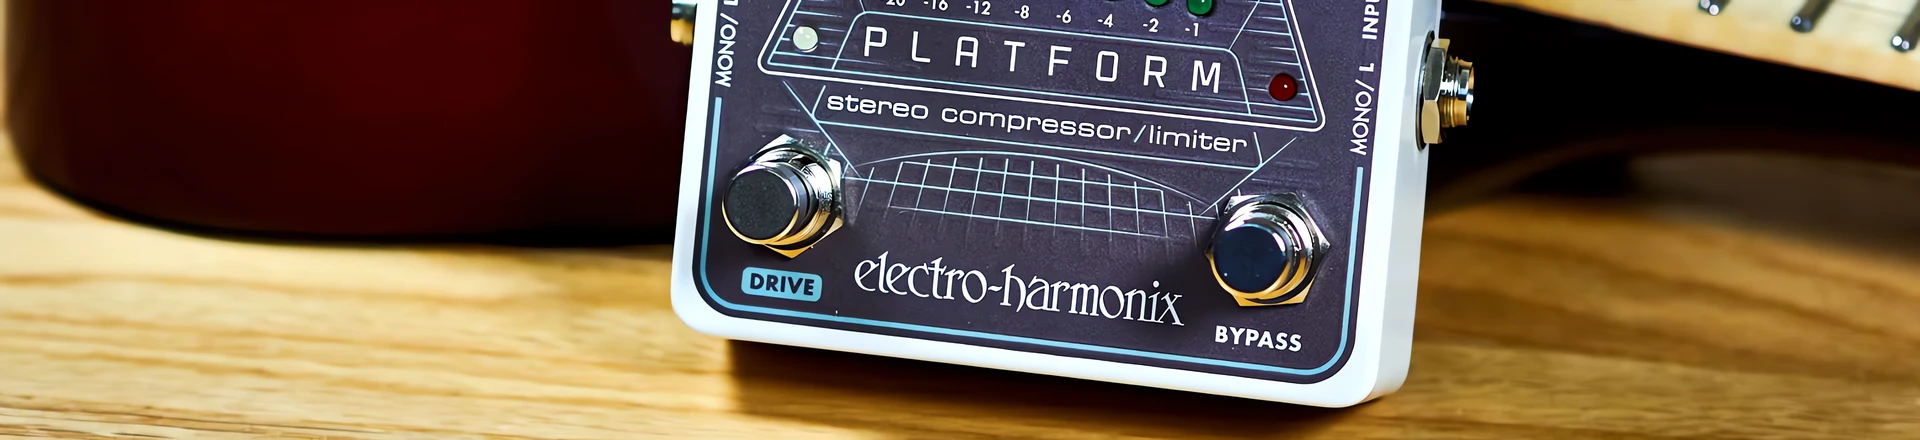 Electro-Harmonix Platform - kompresor/limiter dla kreatywnych 